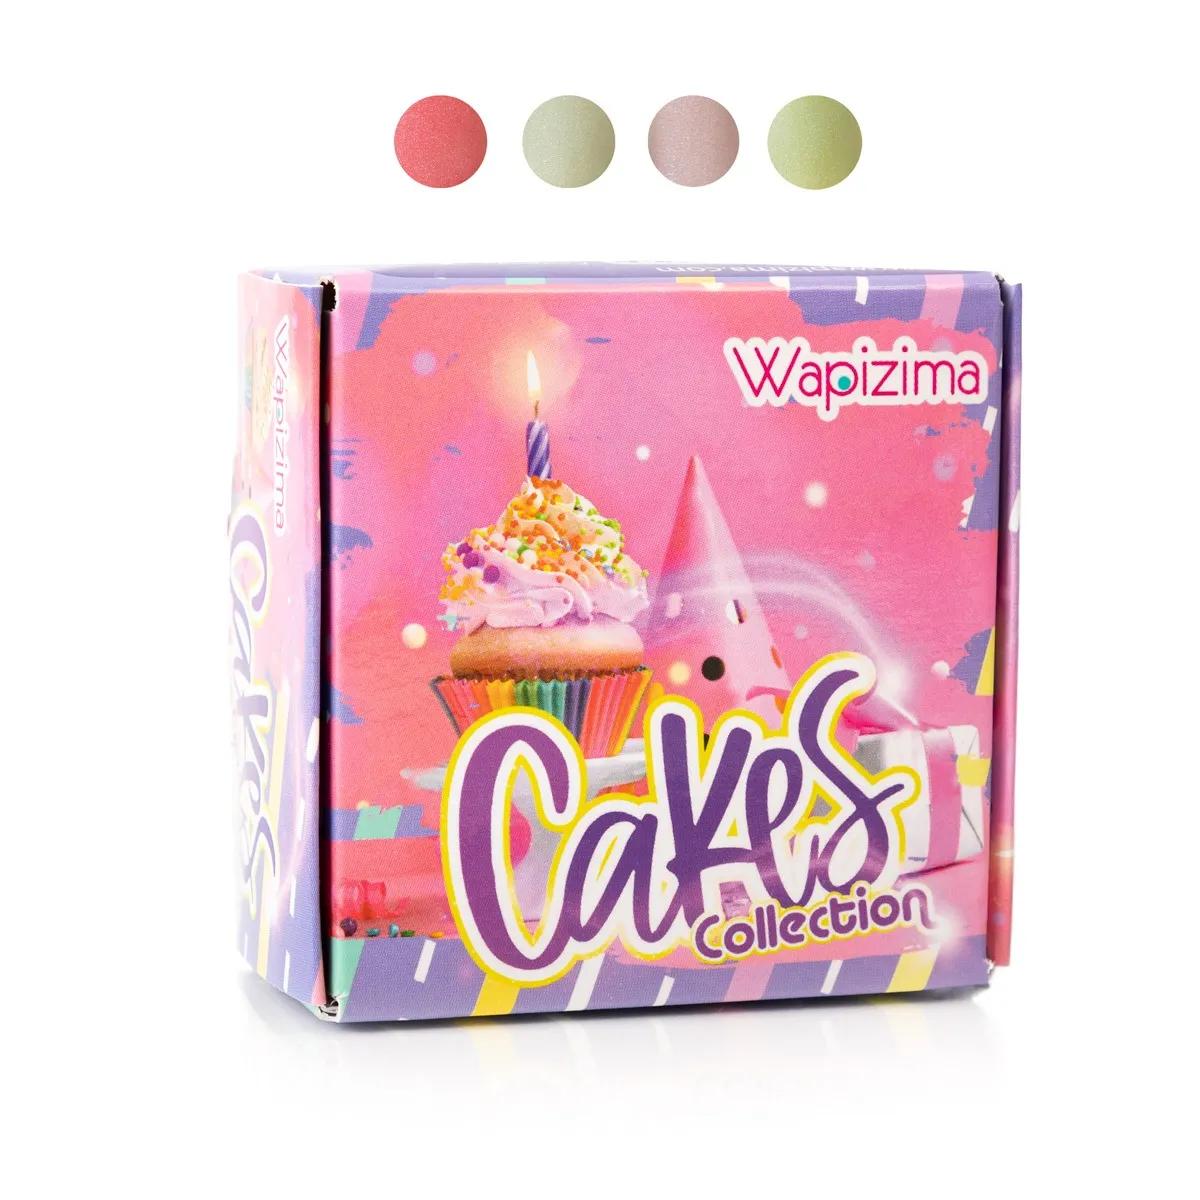 W.Coleccion Cakes 4 Pzas